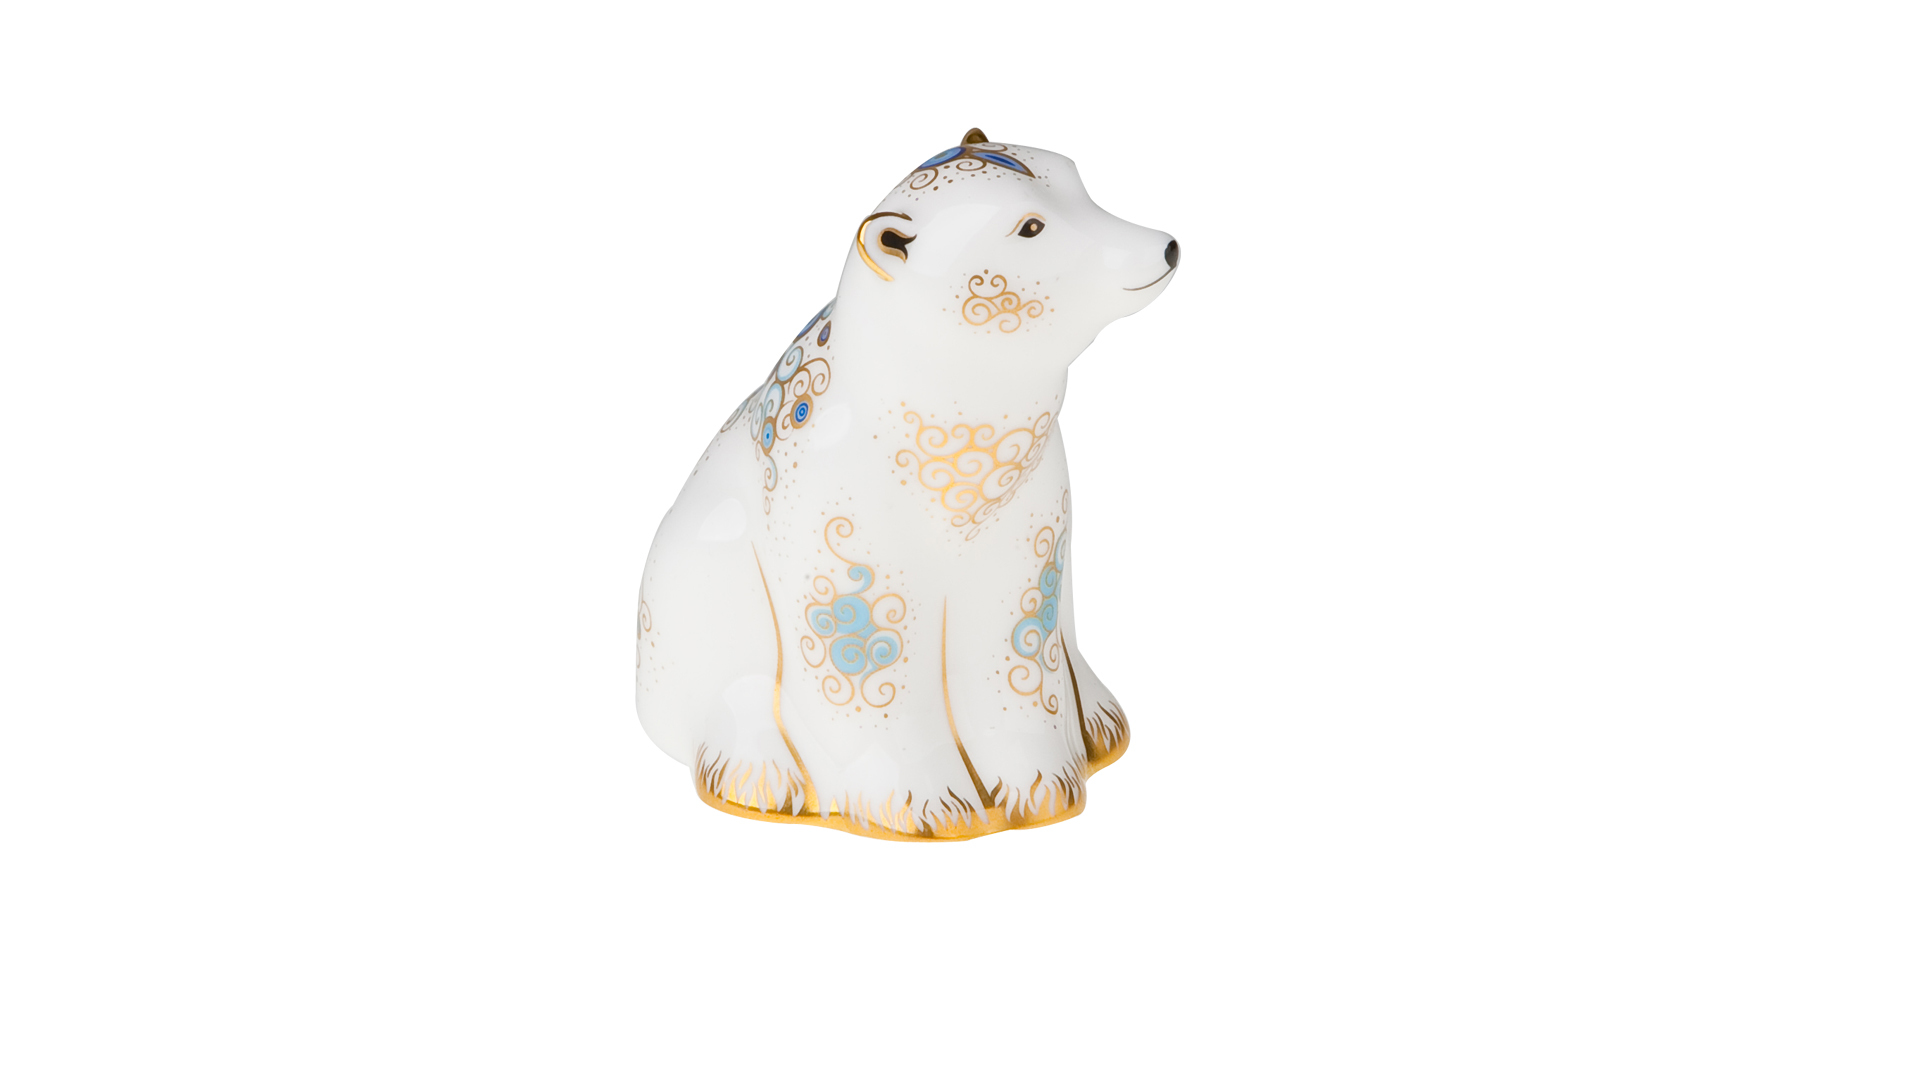 Пресс-папье Royal Crown Derby Белый медвежонок - сидящий 7,5 см